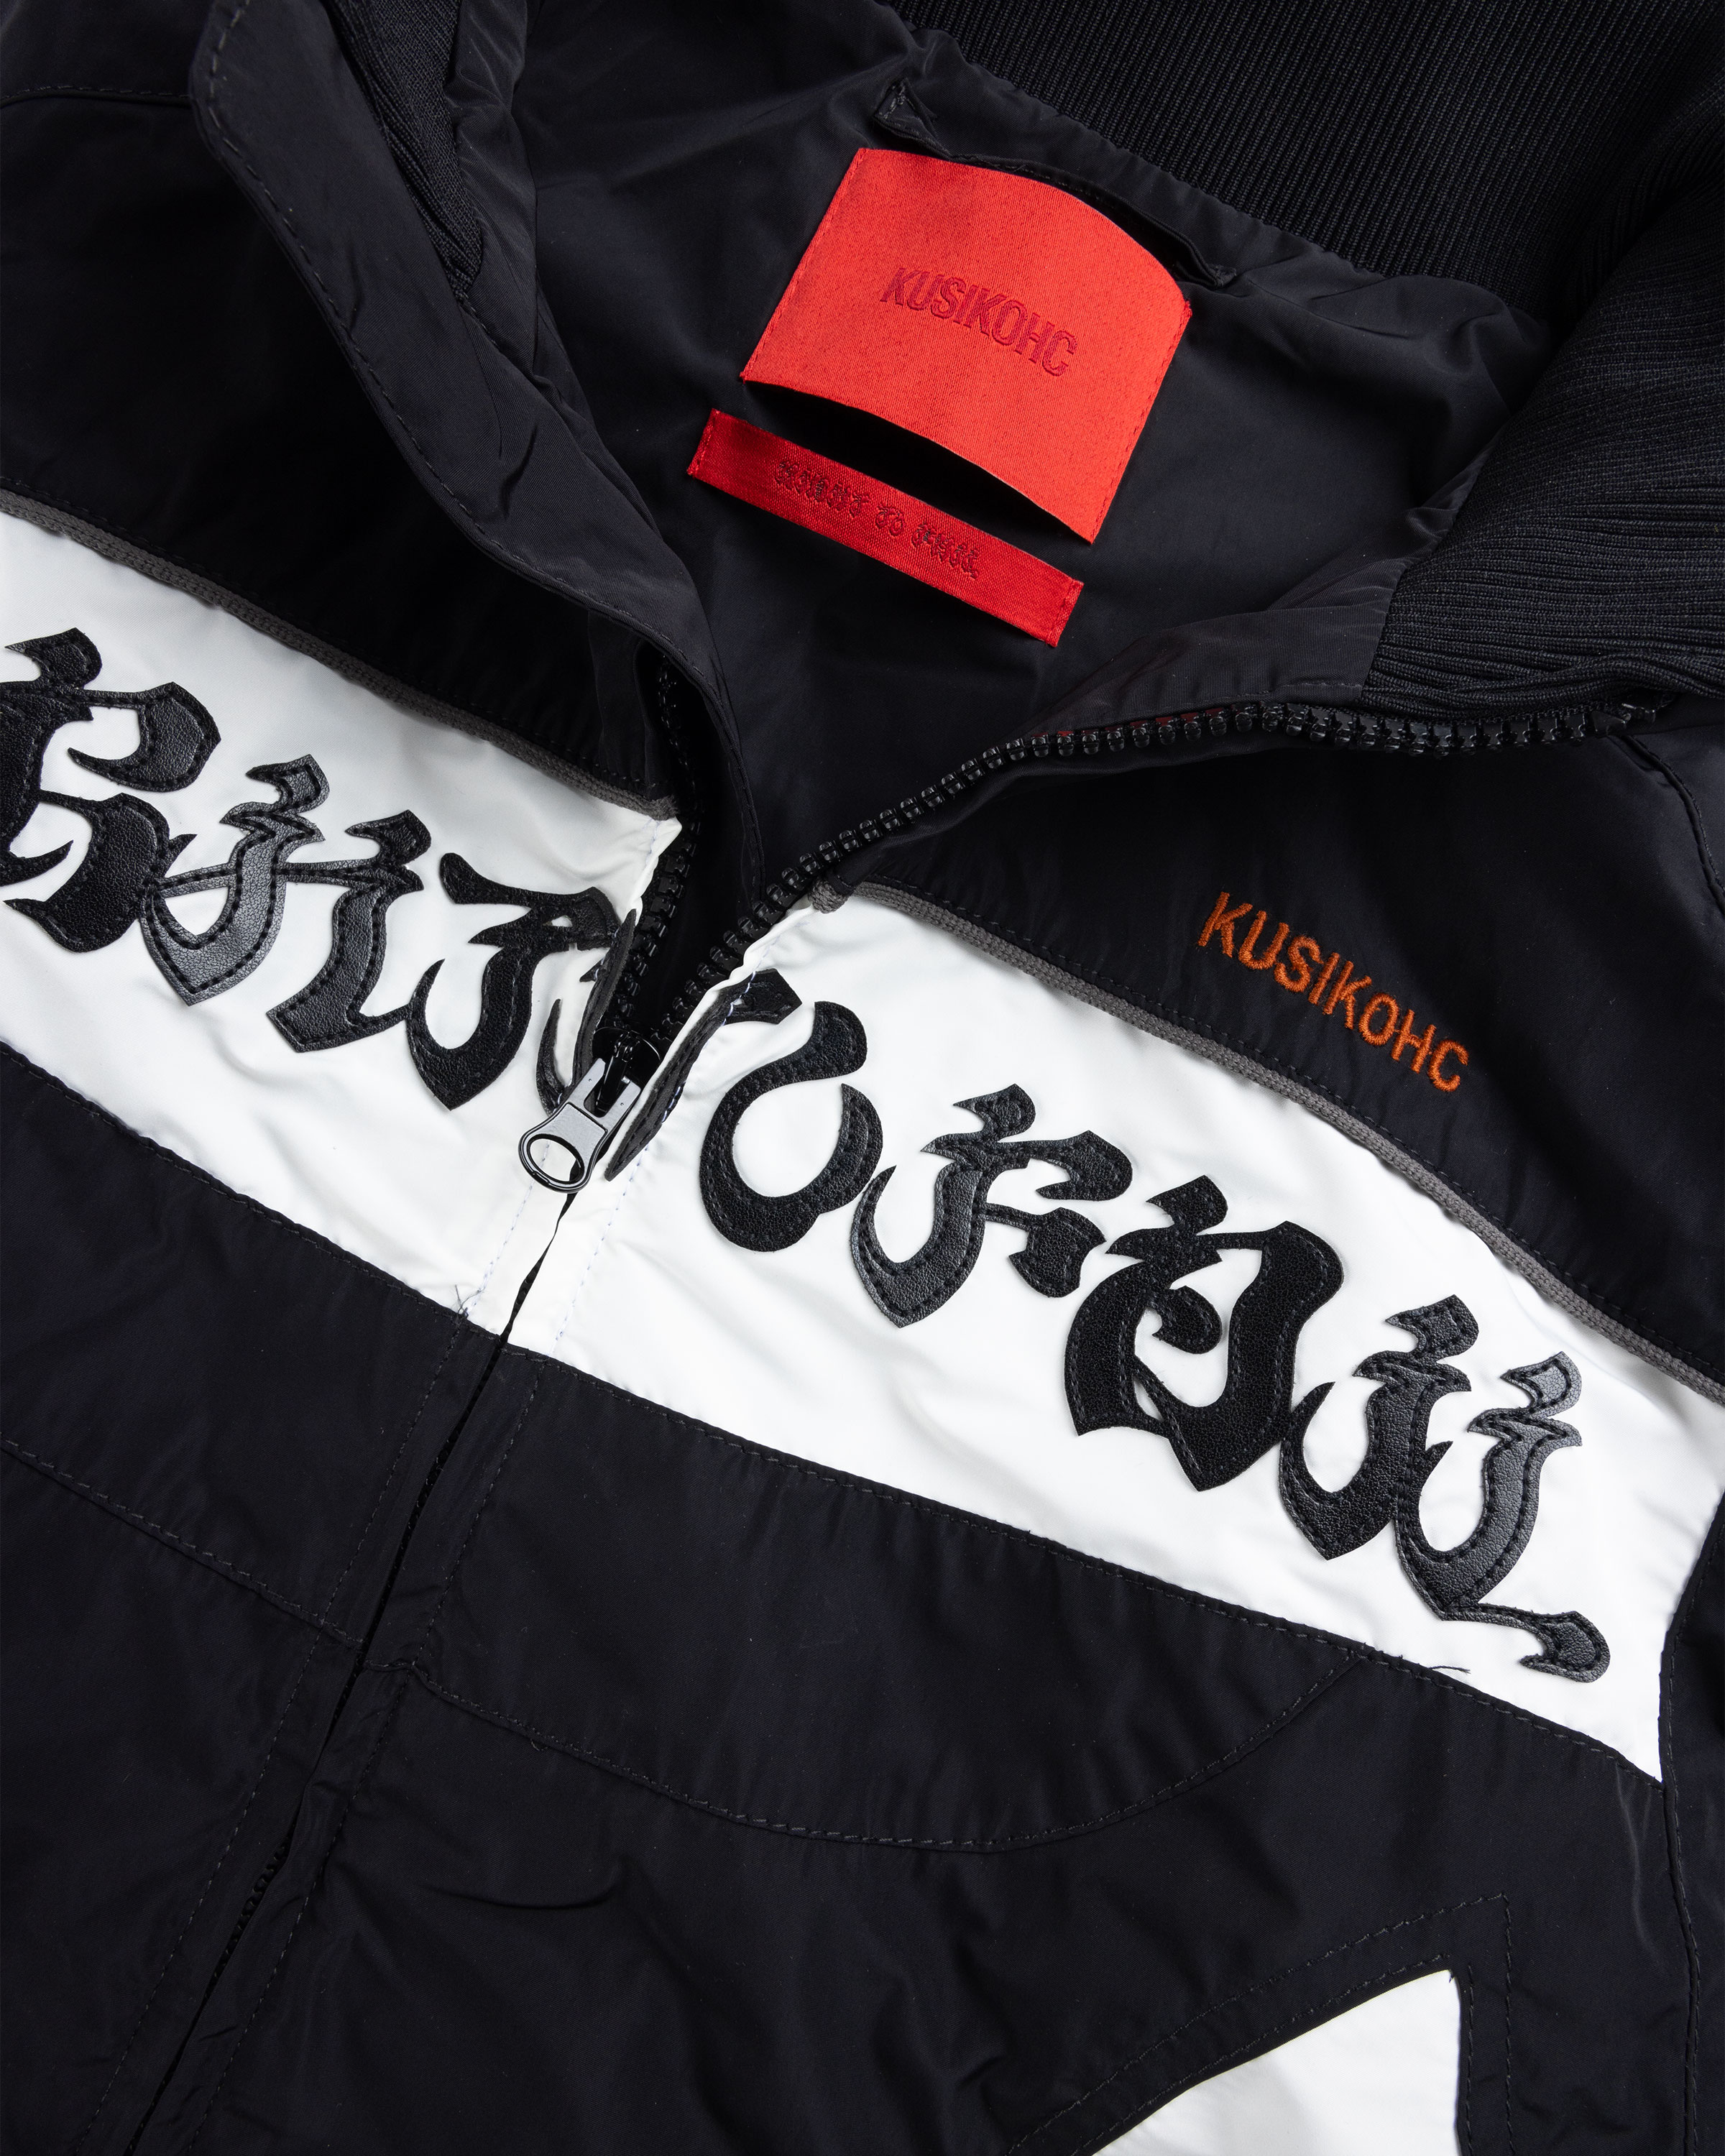 KUSIKOHC – Rider Jacket Black/Cannoli Cream - Outerwear - Black - Image 7